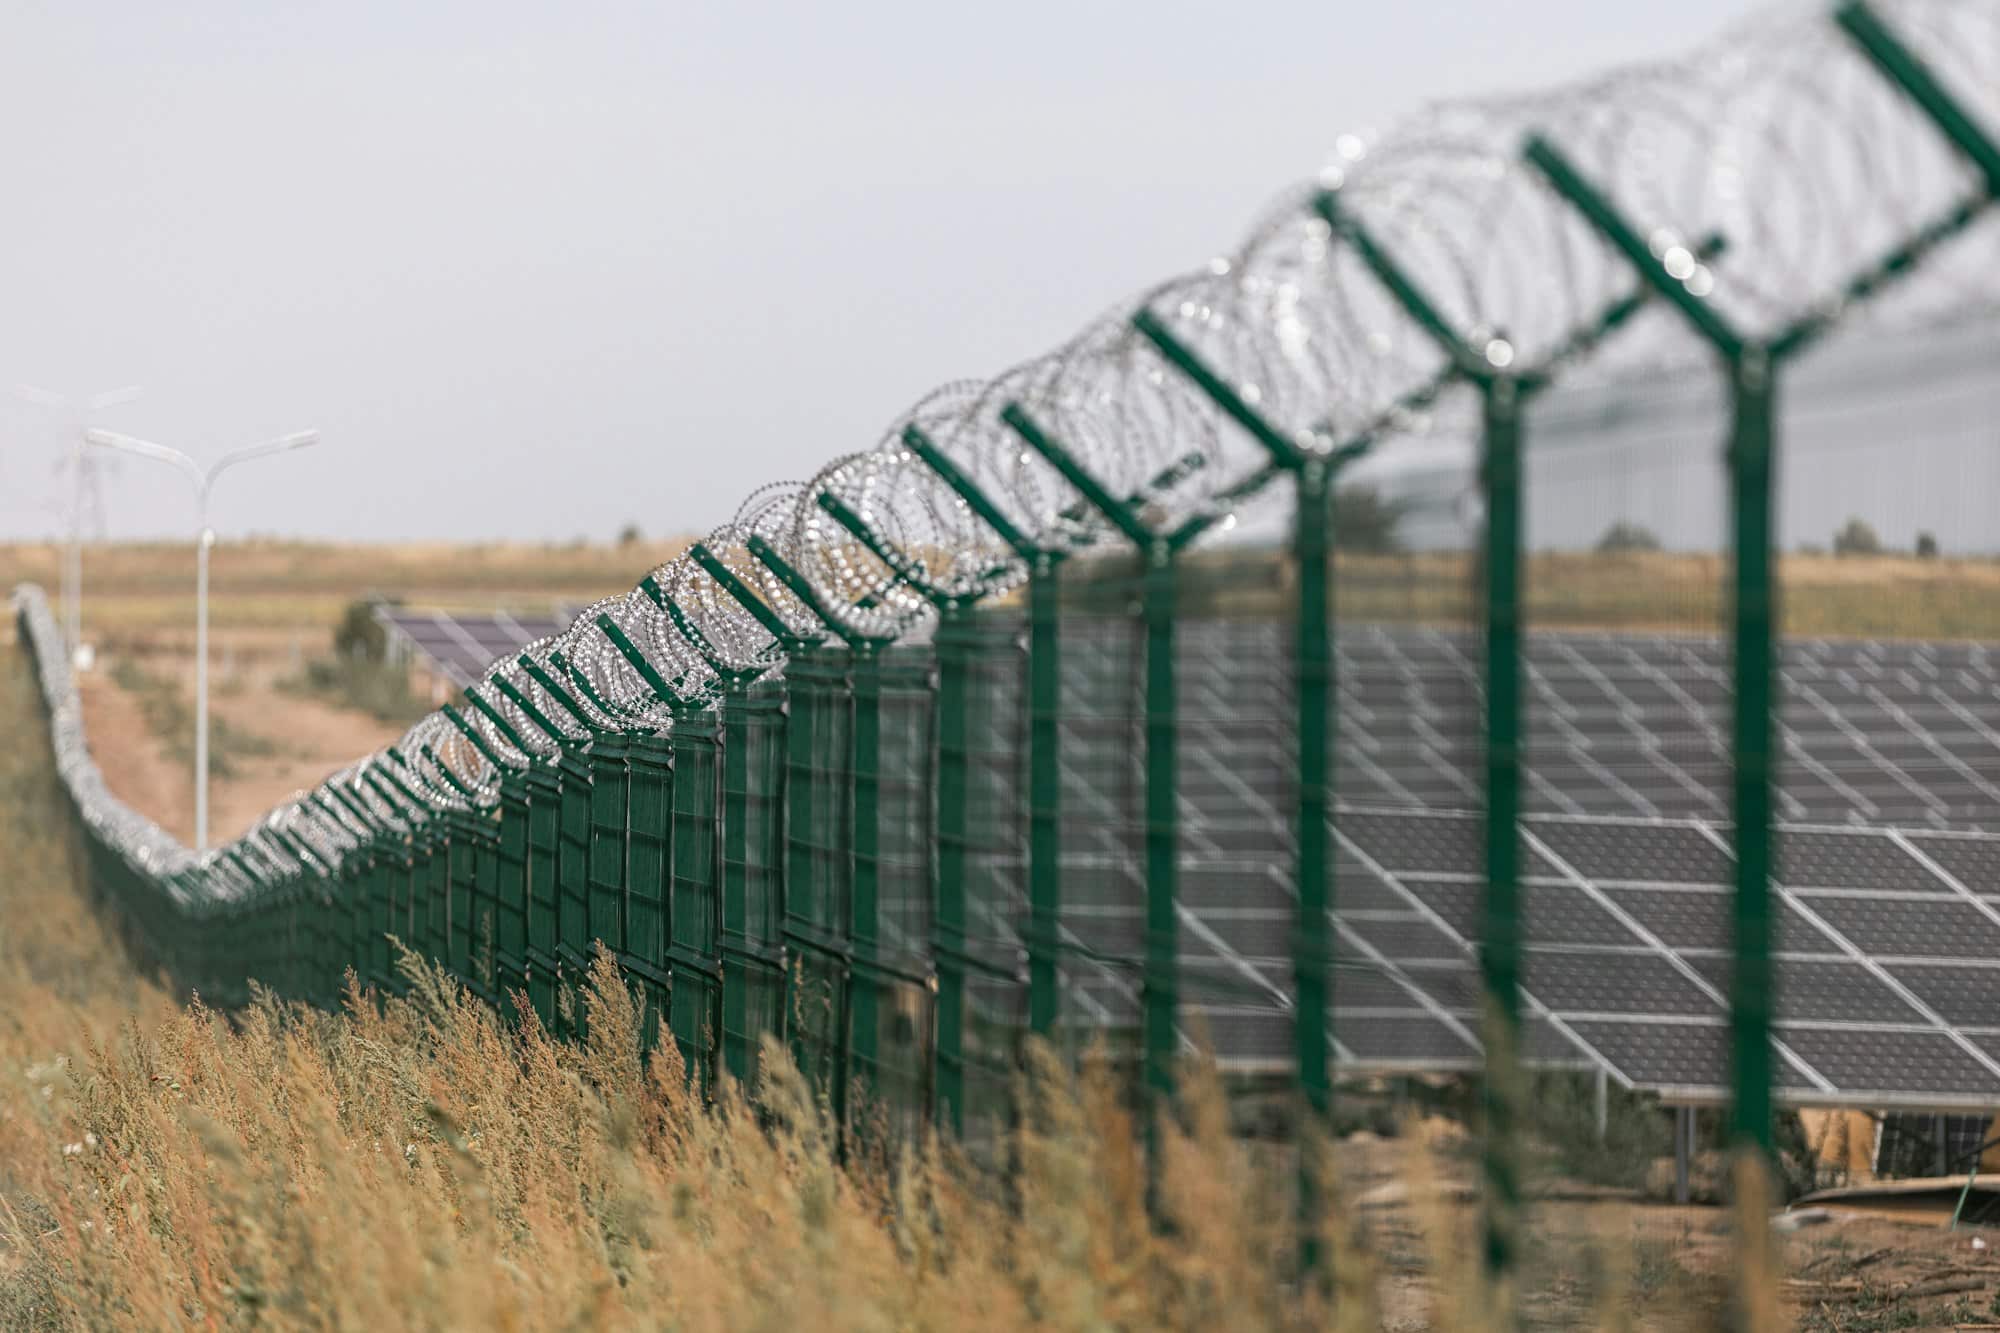 Centrale solare protetta dalla strada tramite recinzione di filo spinato. Recinzione dei siti sensibili con